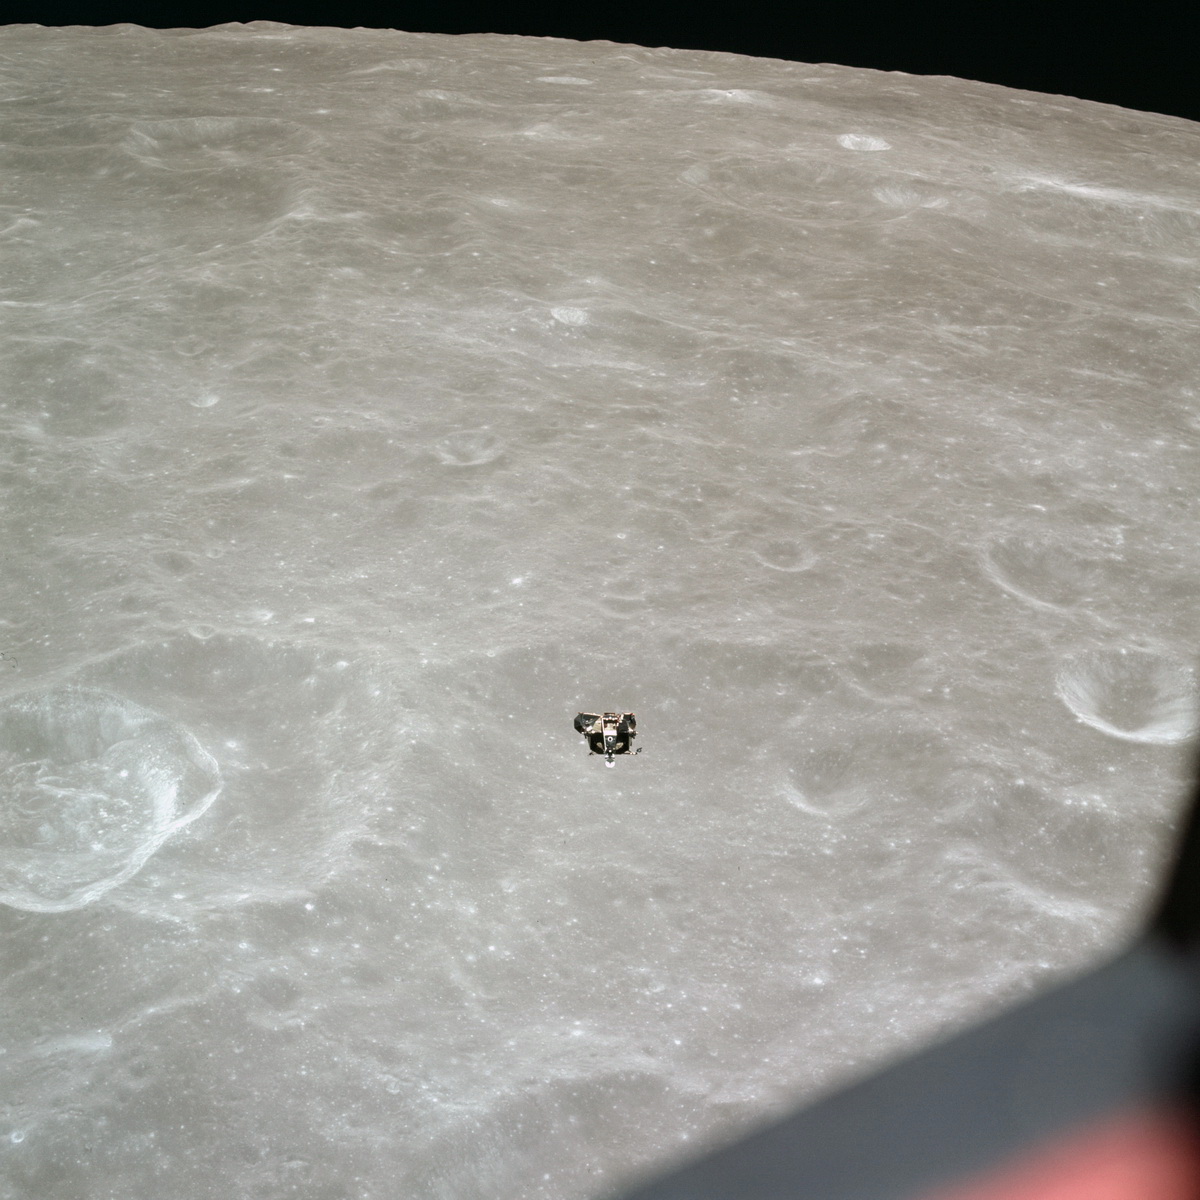 лунный модуль поднимается на окололунную орбиту